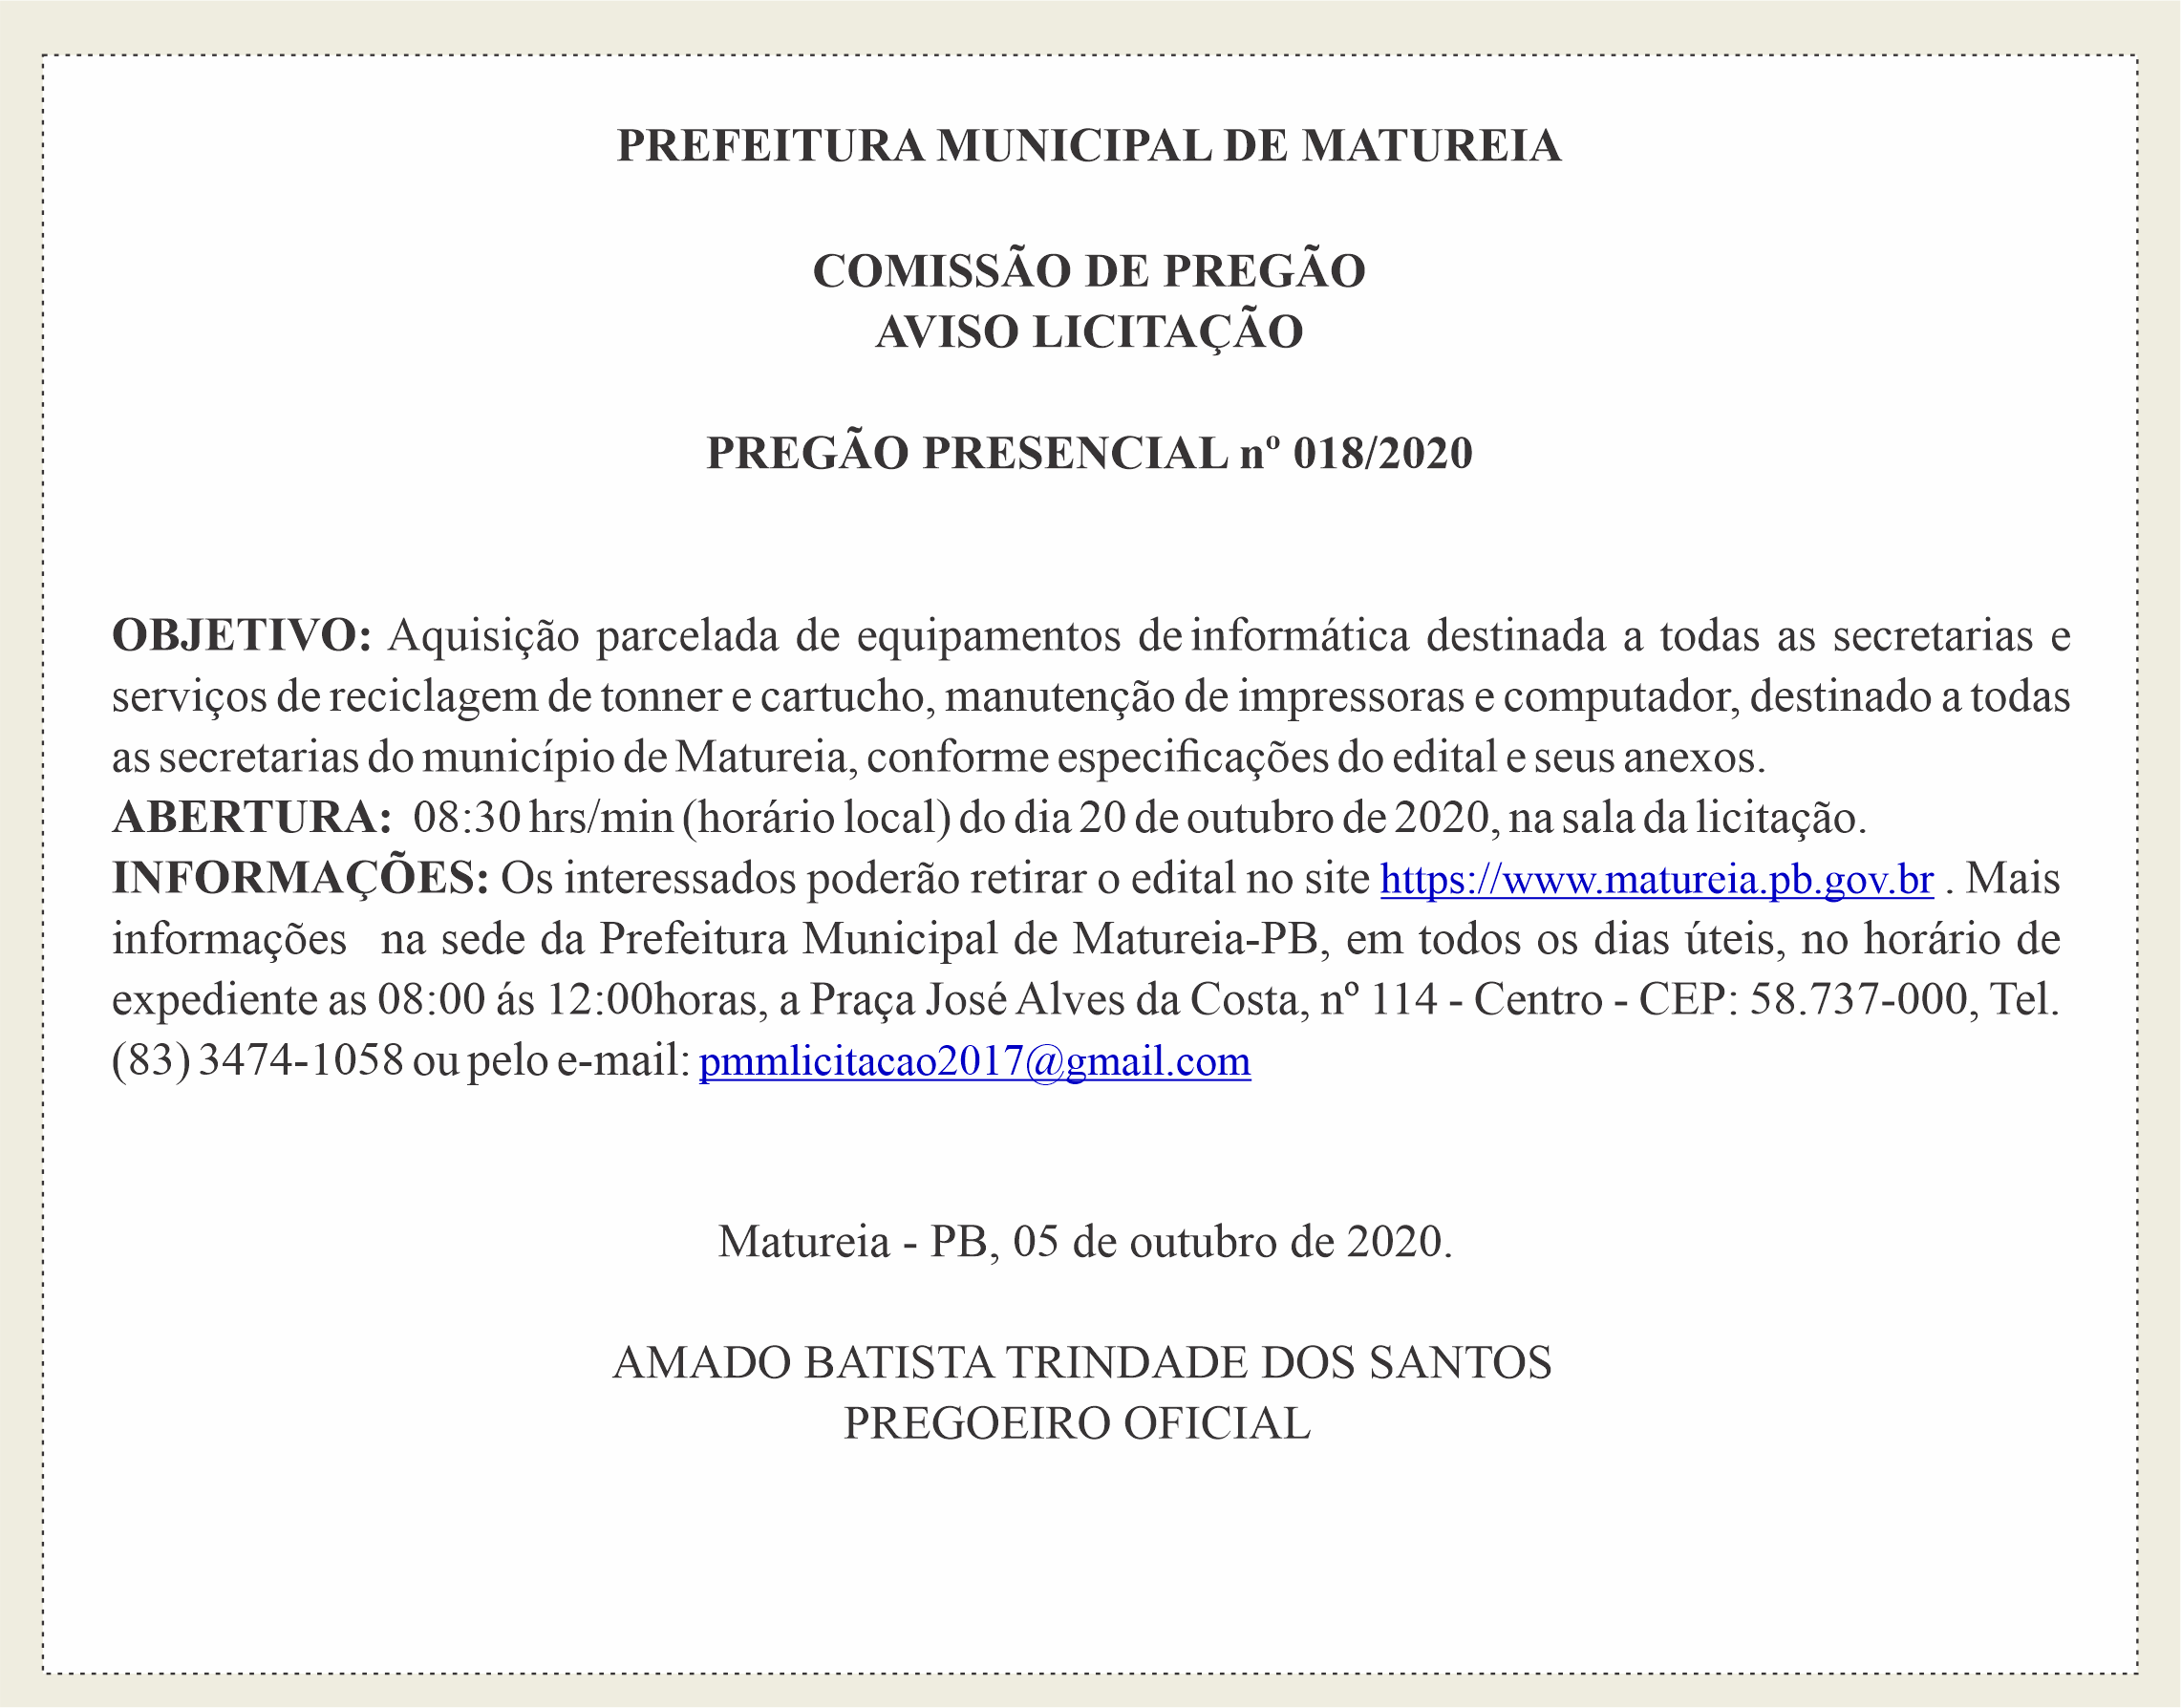 PREFEITURA MUNICIPAL DE MATUREIA – AVISO LICITAÇÃO – PREGÃO PRESENCIAL Nº 018/2020